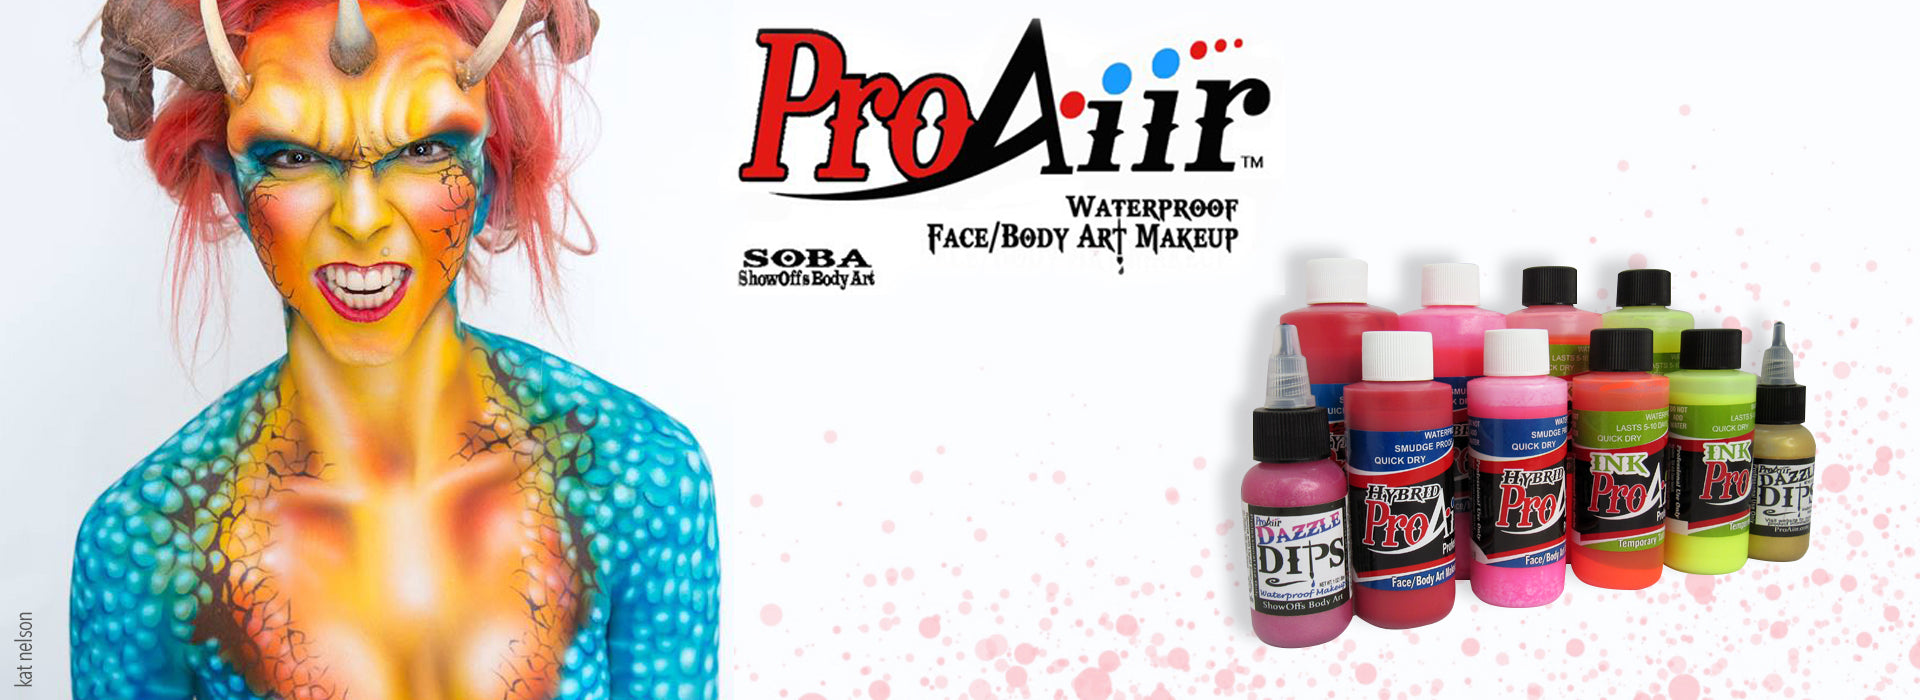 ProAiir Airbrush Makeup